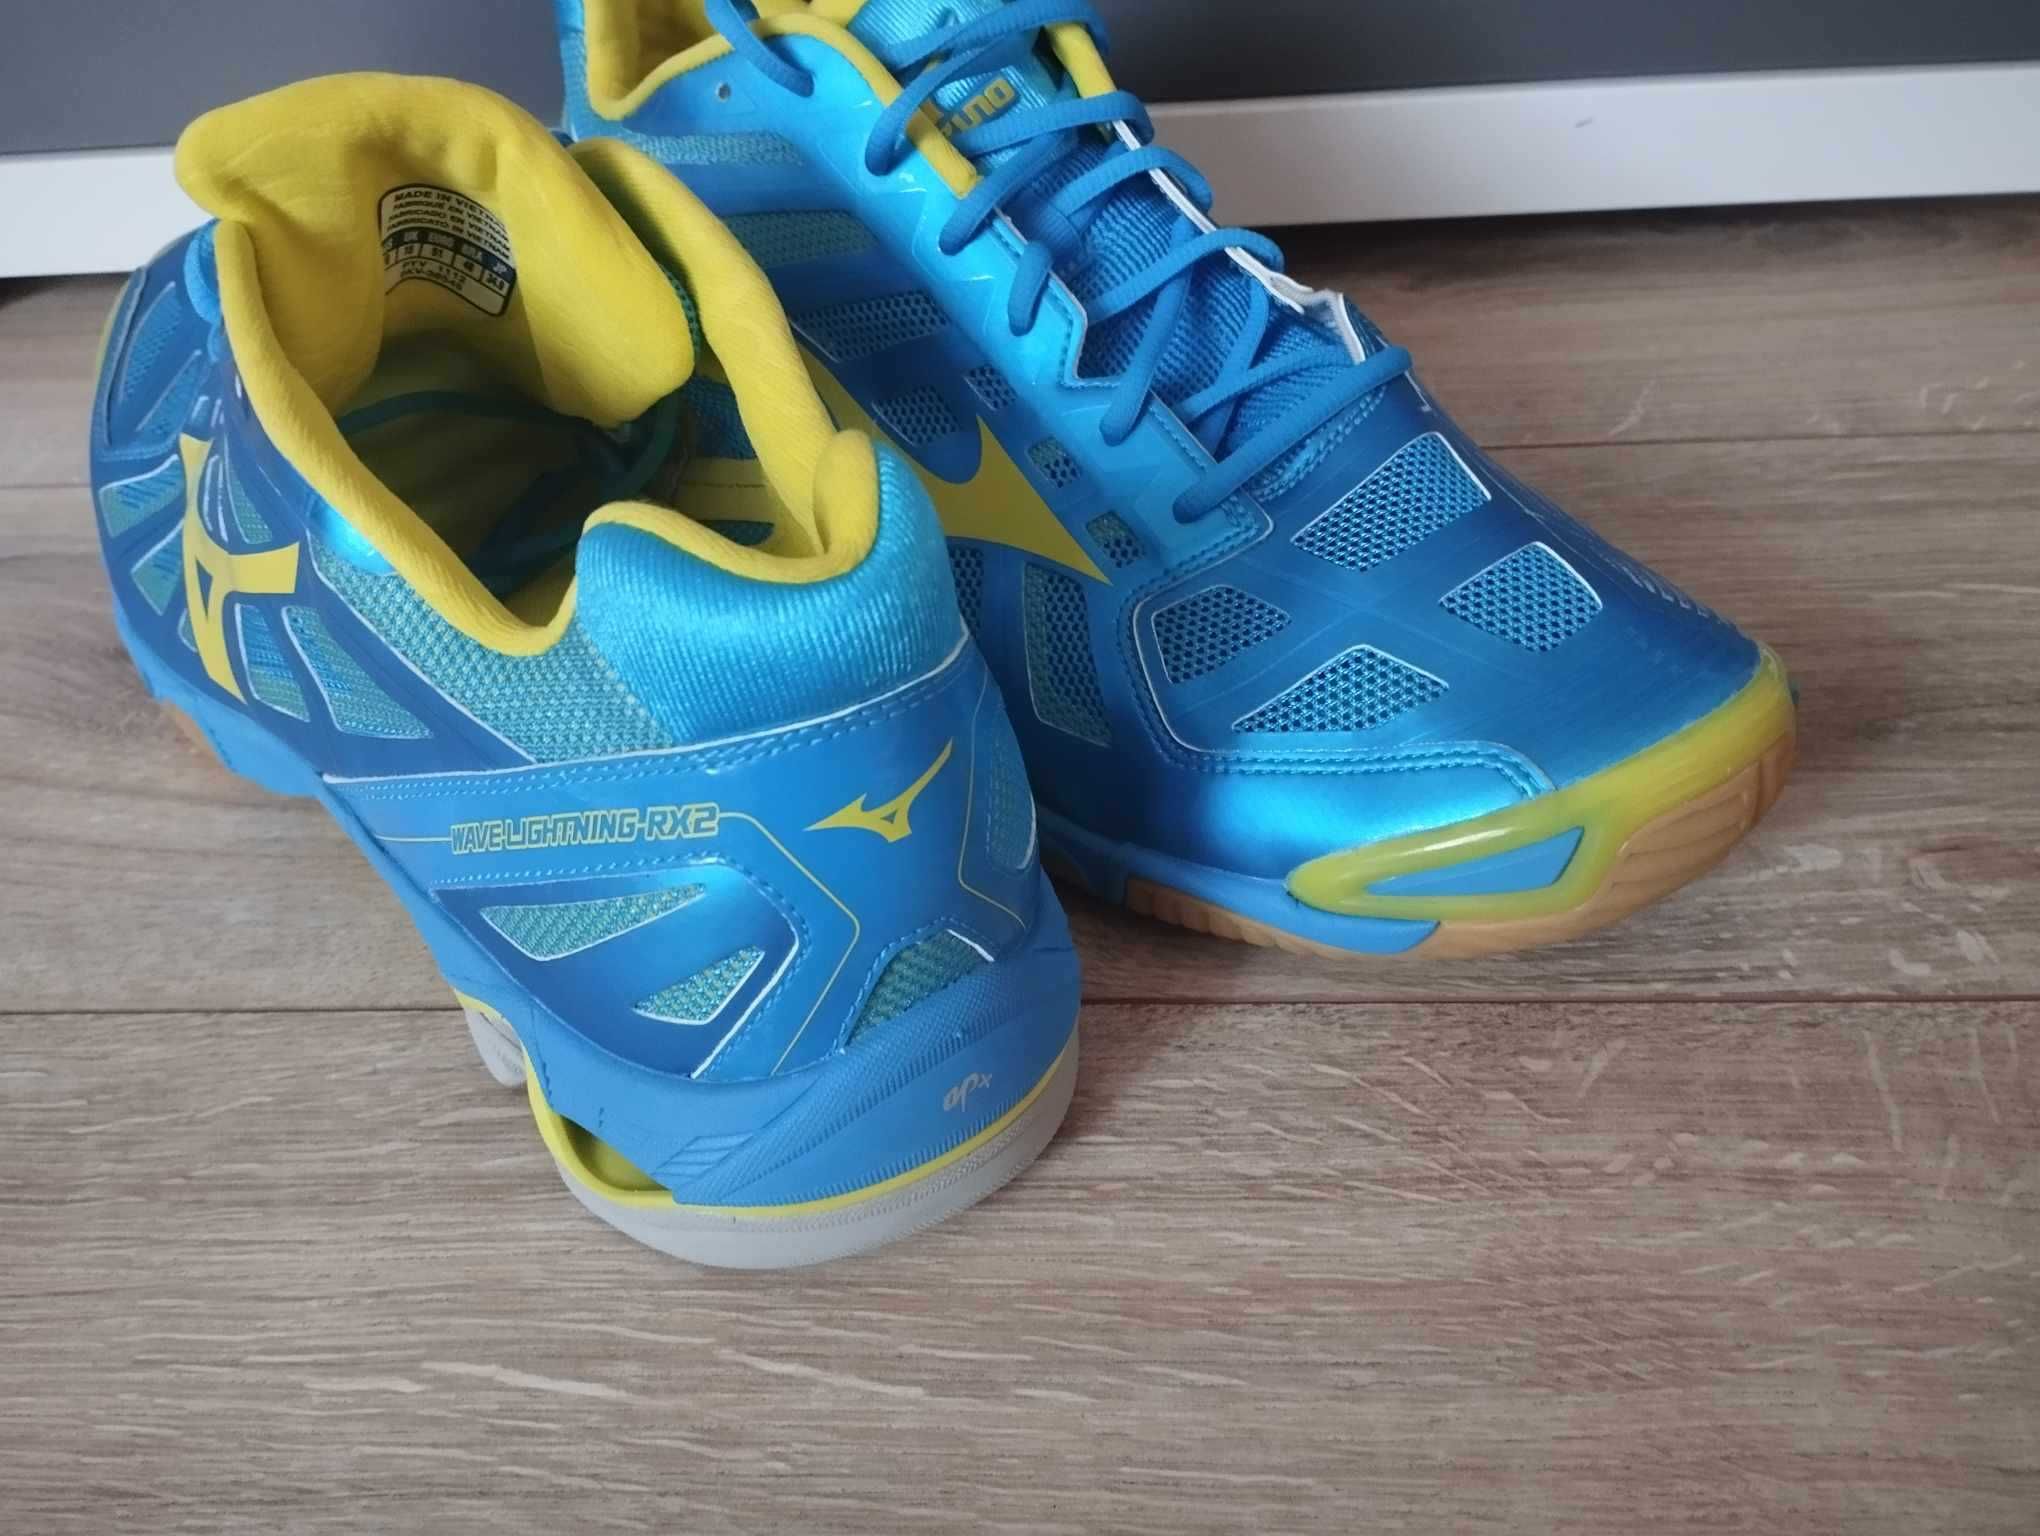 Mizuno  Wave Lightning rx2 buty halowe nowe size 51